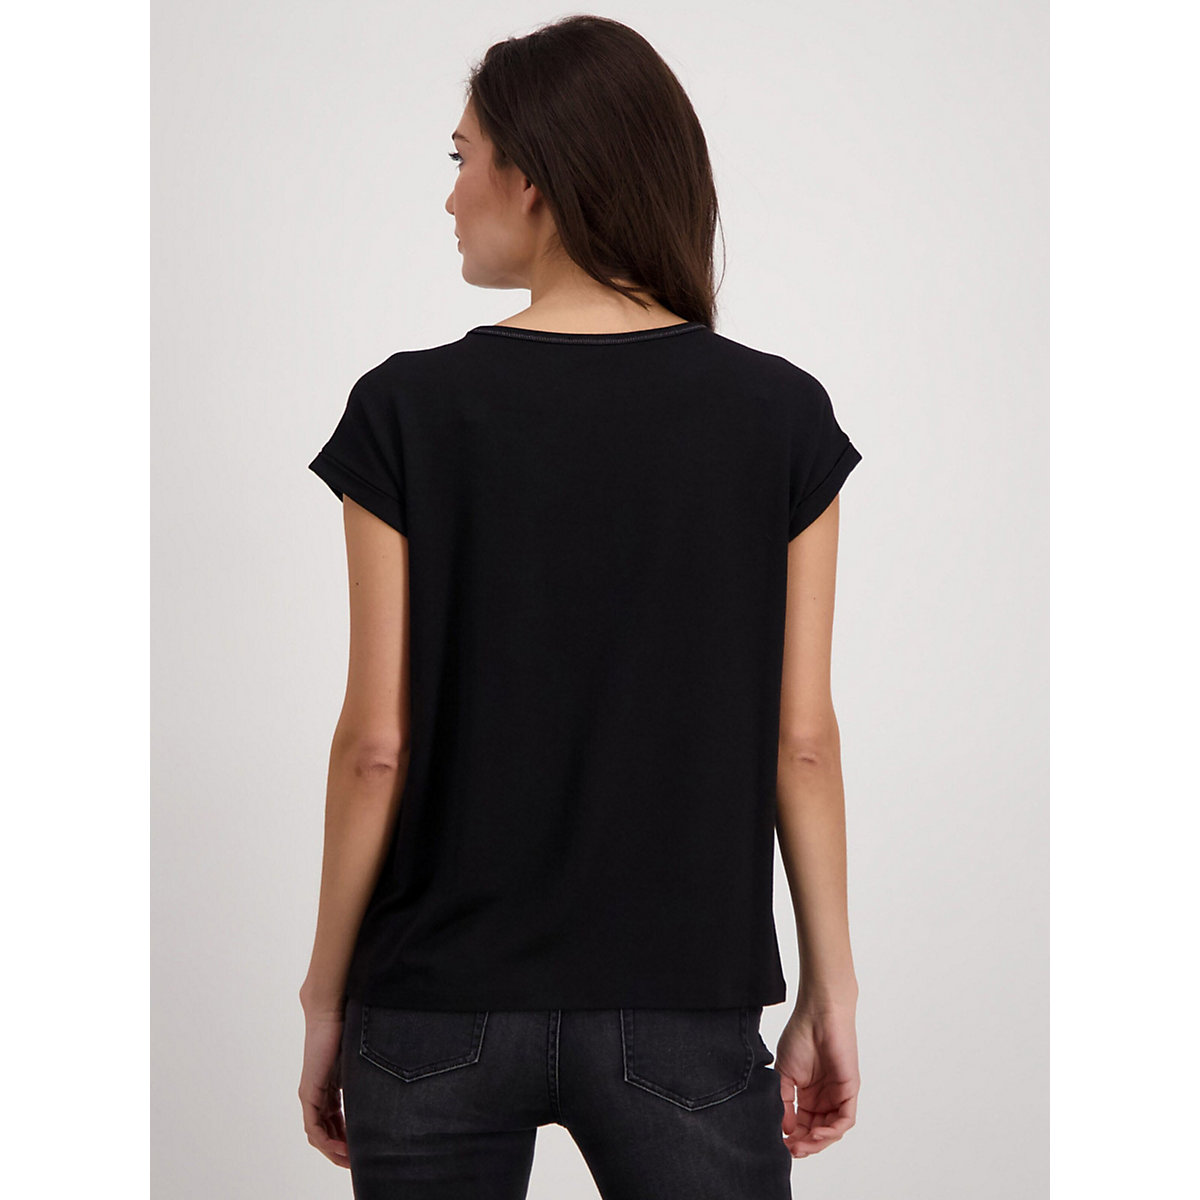 monari T-Shirt für Mädchen schwarz/grau